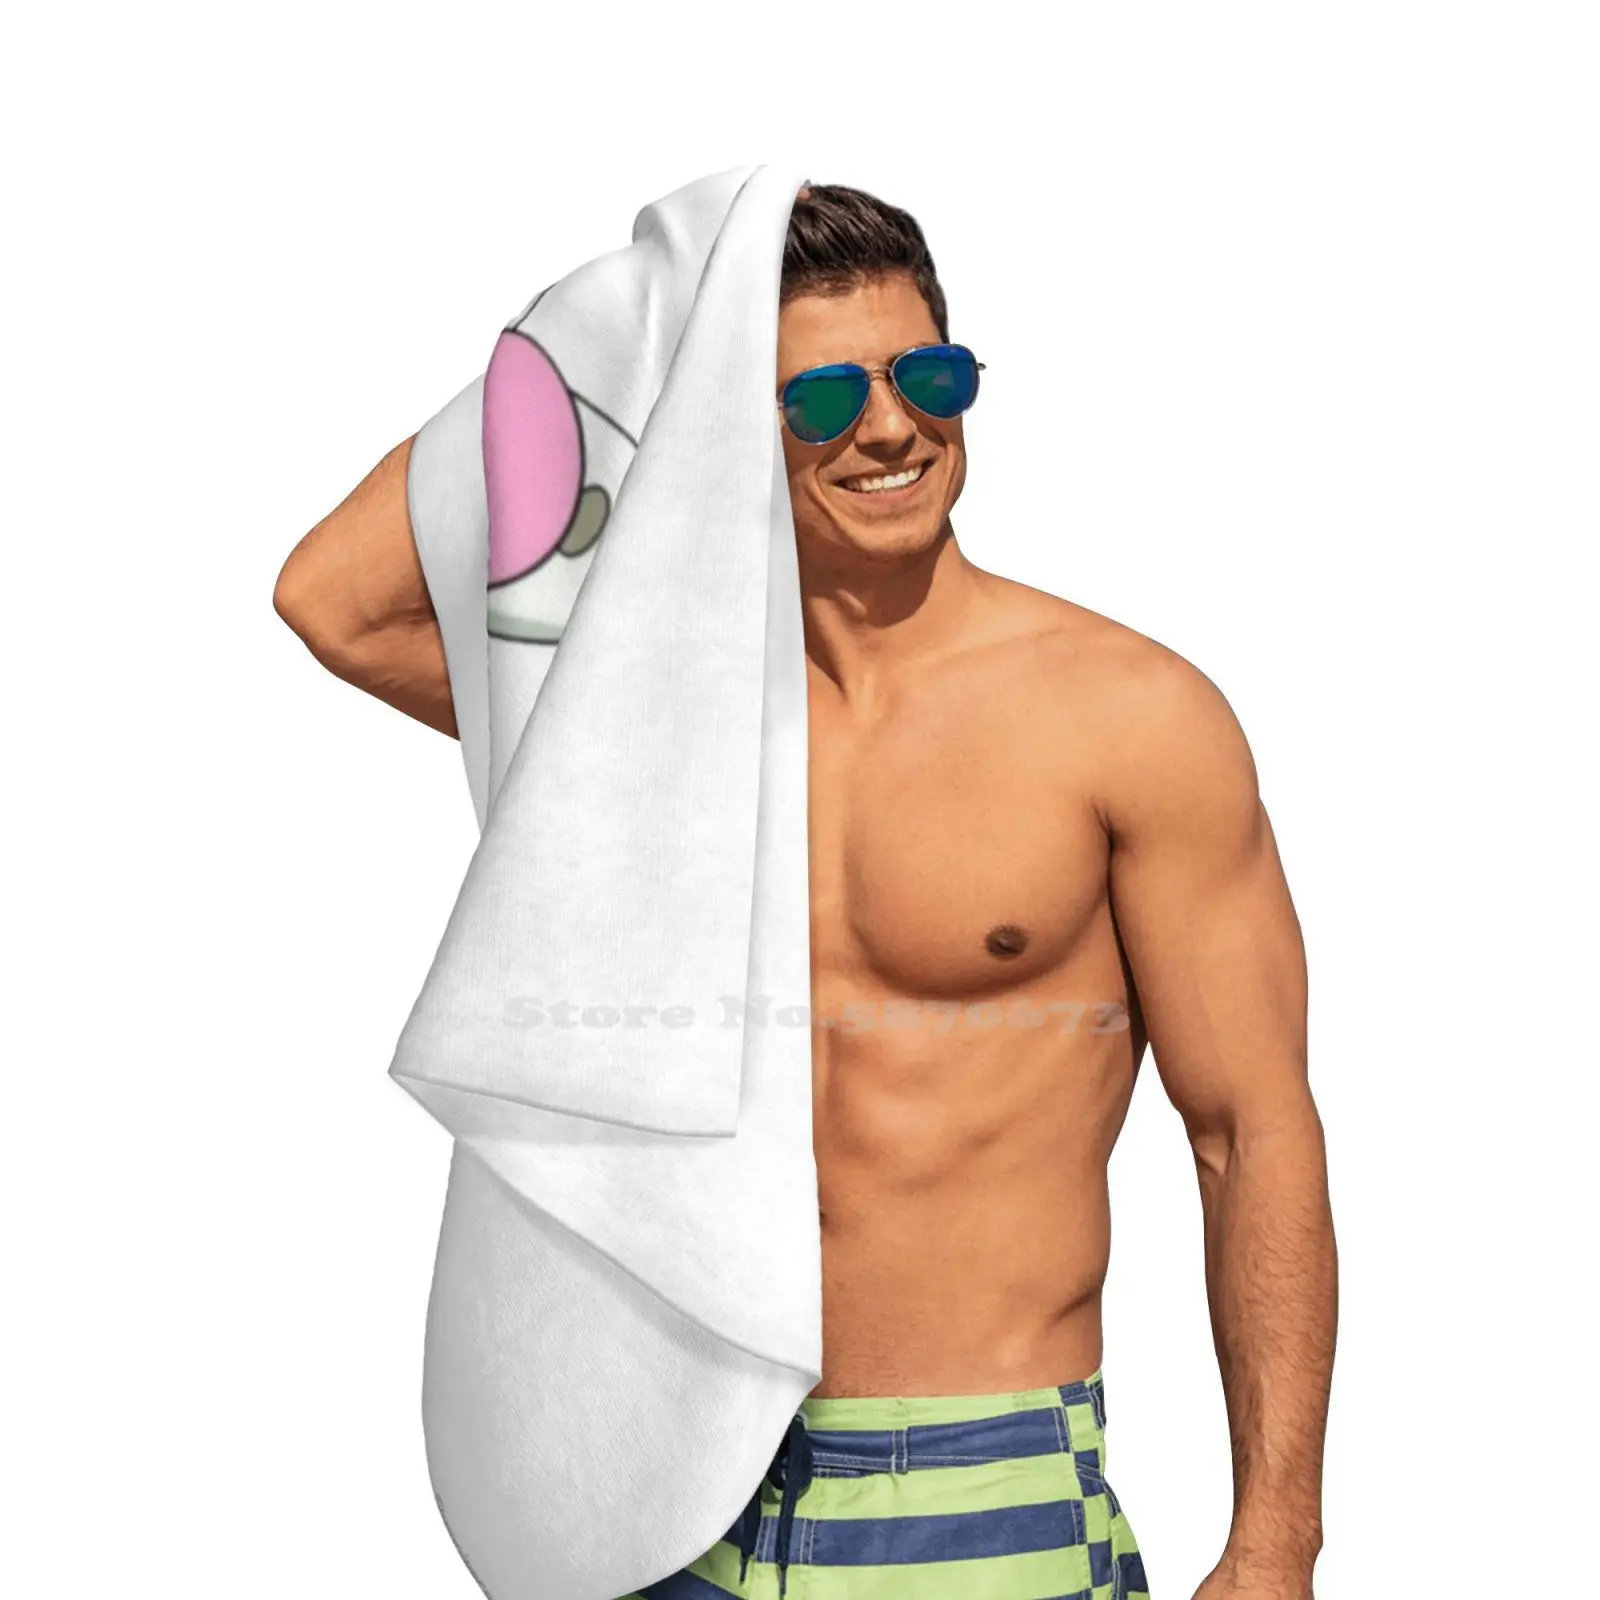 Мягкое полотенце высокое качество спортивное пляжное модный эстетичный